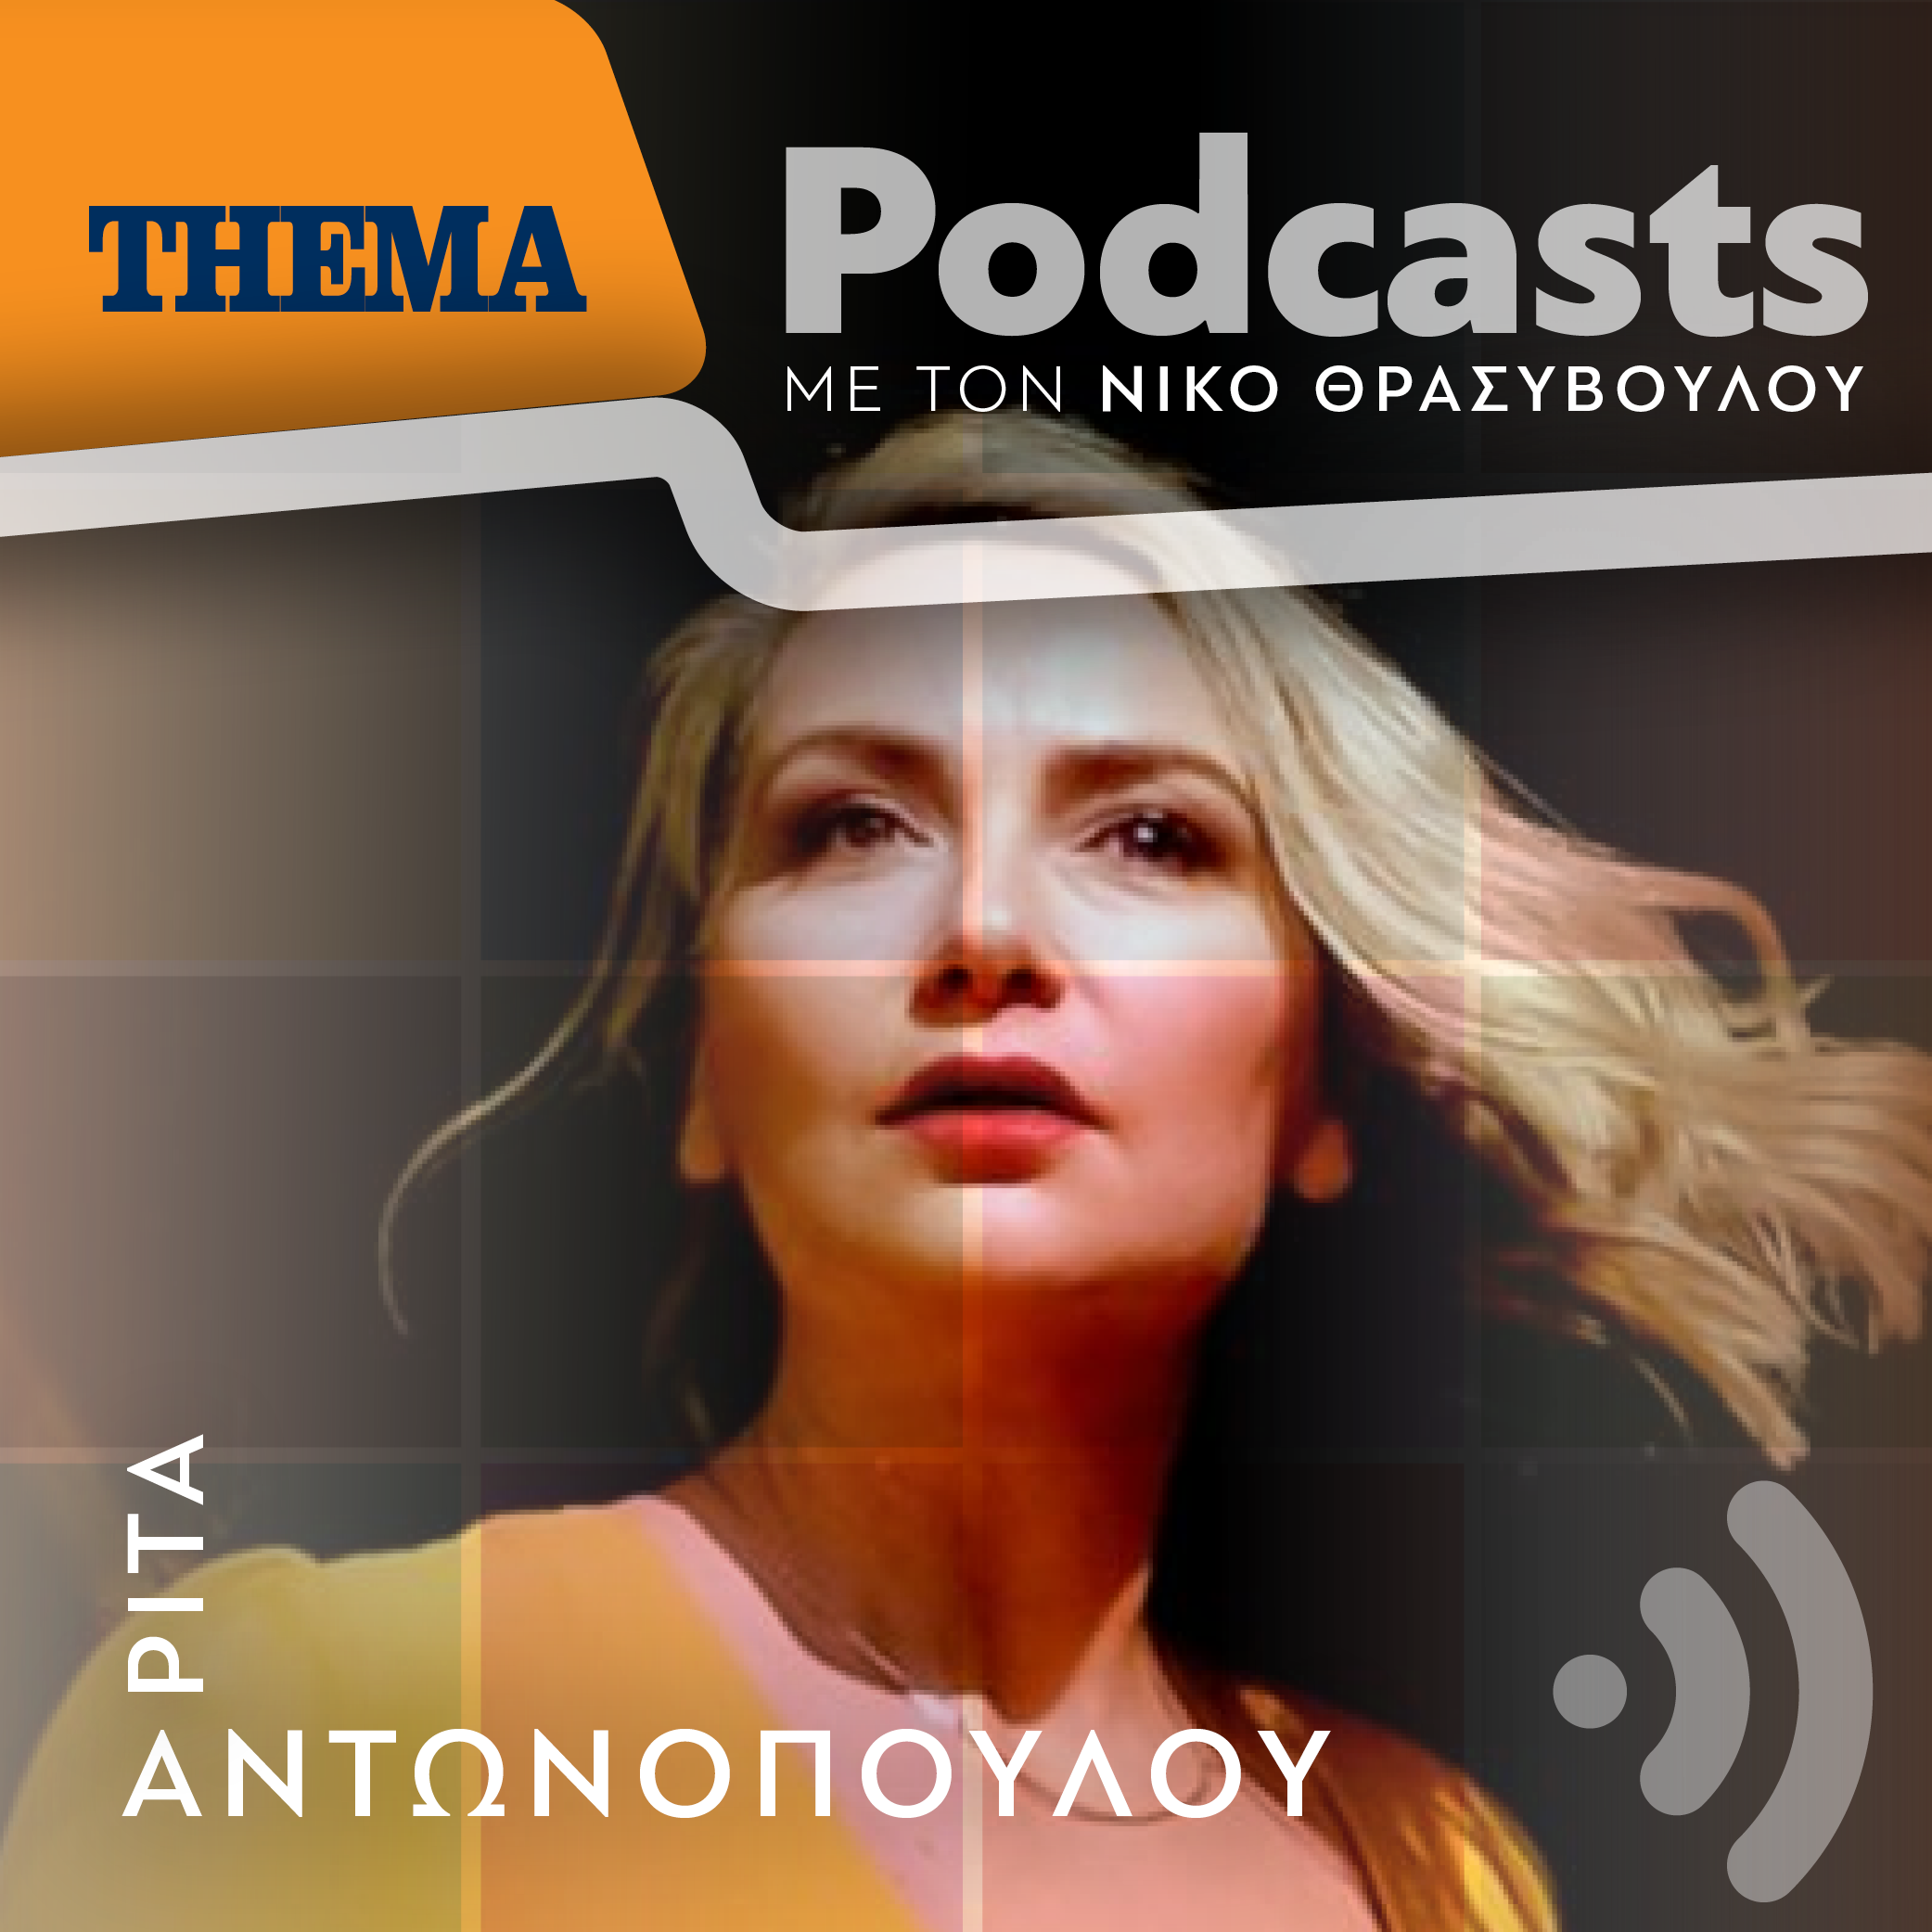 Ρίτα Αντωνοπούλου: «Η συνεργασία μου με τους μεγάλους συνθέτες είναι το μεγάλο μου παράσημο»